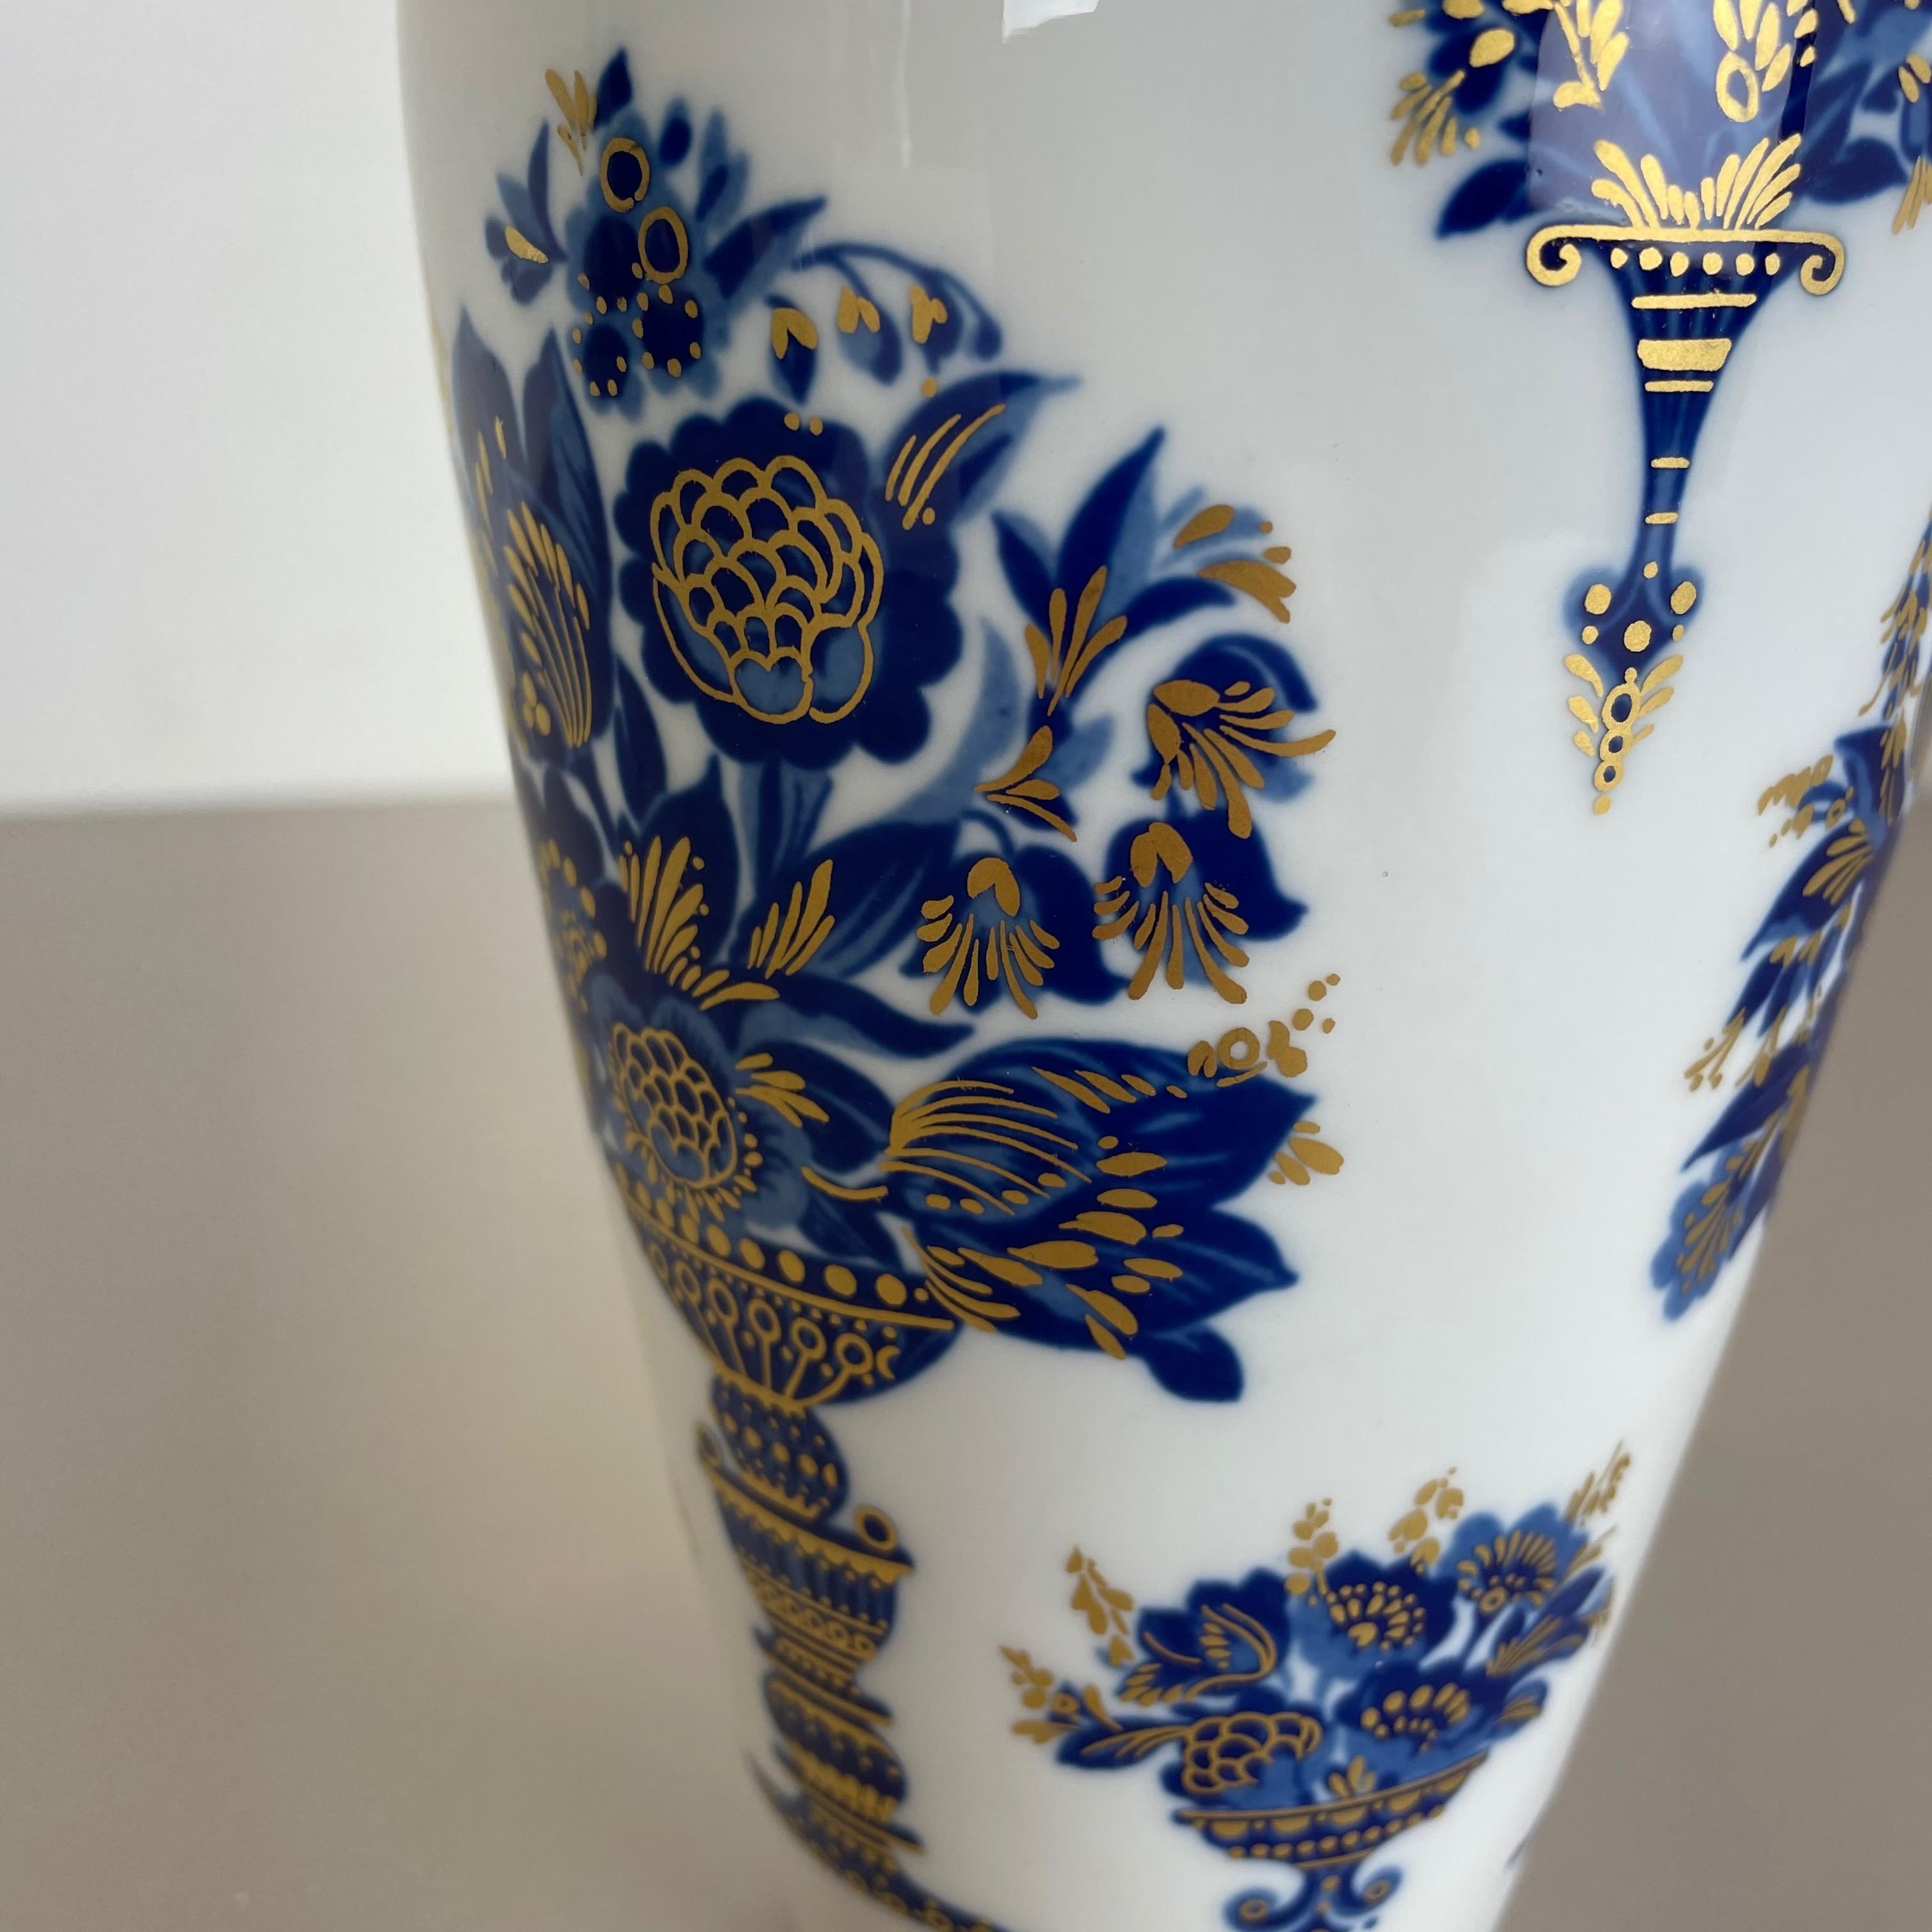 Original 1970s Op Art Vase Porcelain German Vase by Heinrich Ceramics, Germany For Sale 1